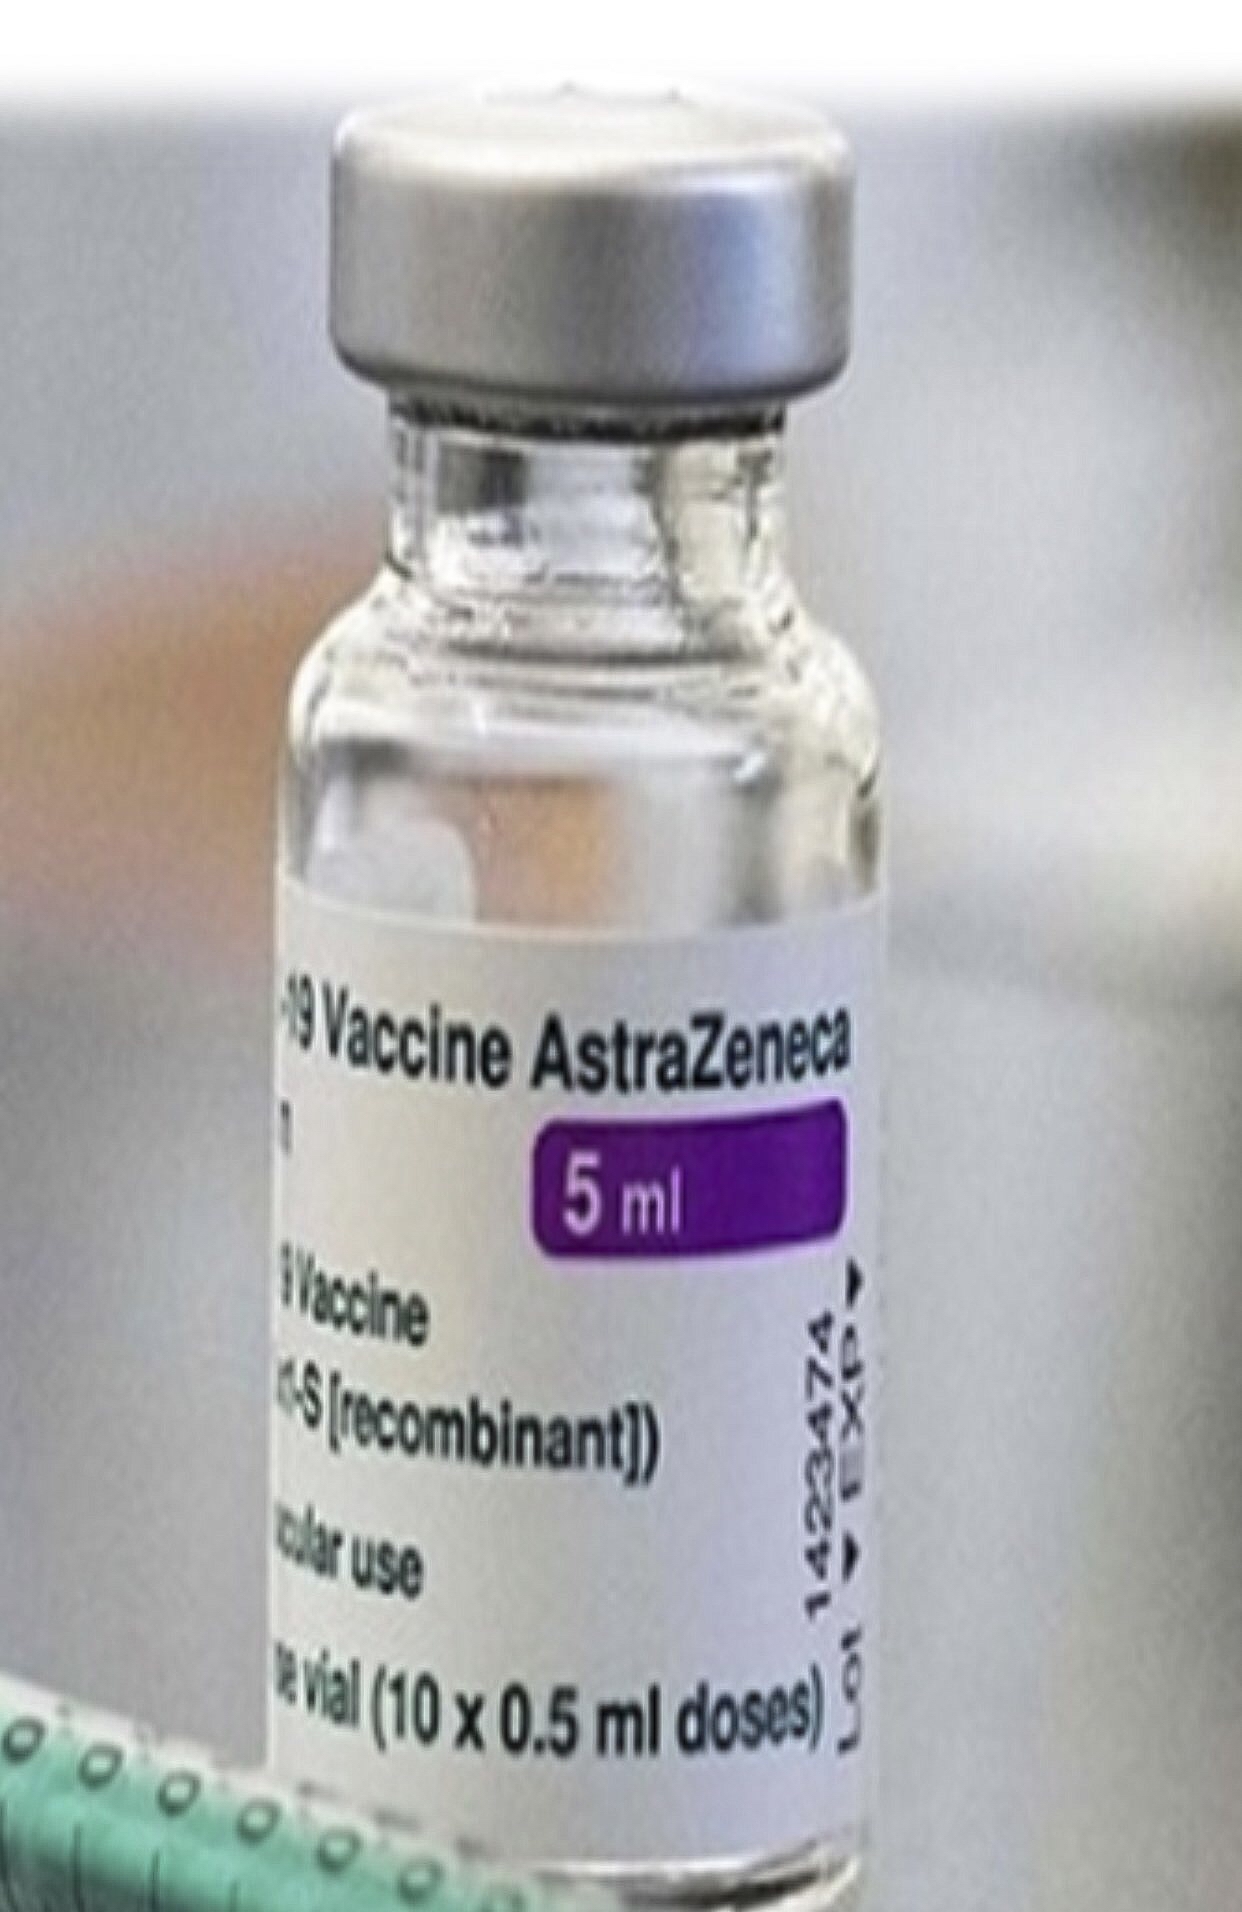 Tiêm vaccine phòng Covid-19: Phản ứng nặng có ảnh hưởng kế hoạch tiêm chủng?